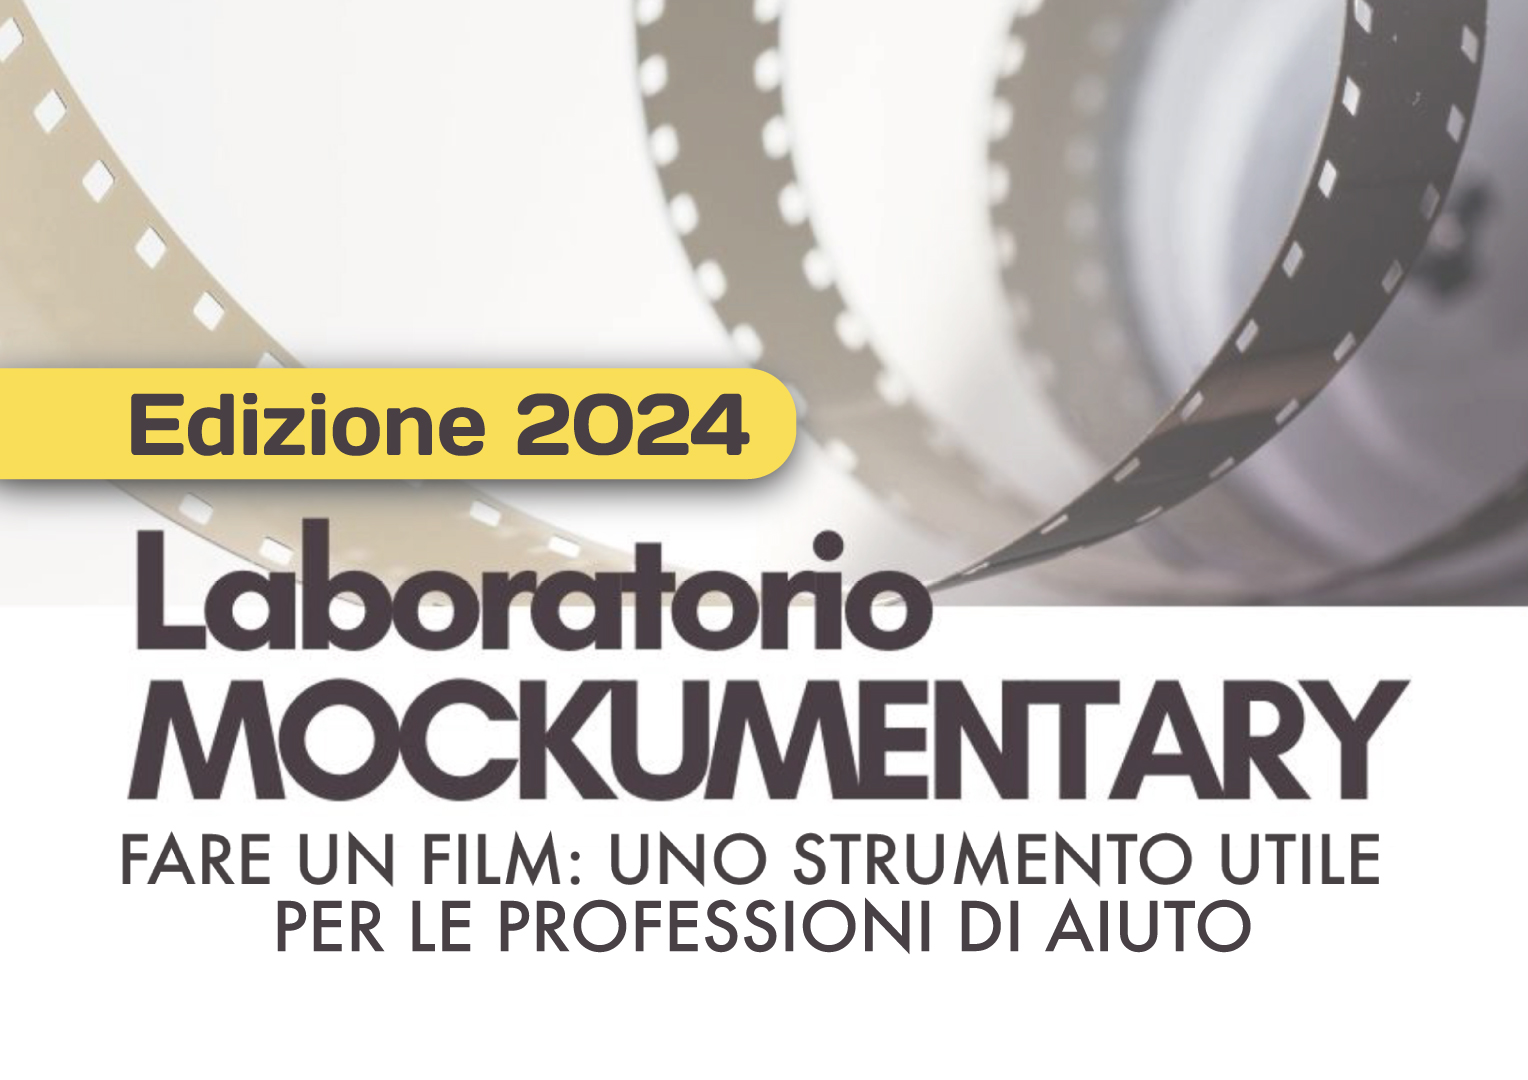 Laboratorio  MOCKUMENTARY 2024 – Fare un Film: Uno strumento utile per le professioni di aiuto